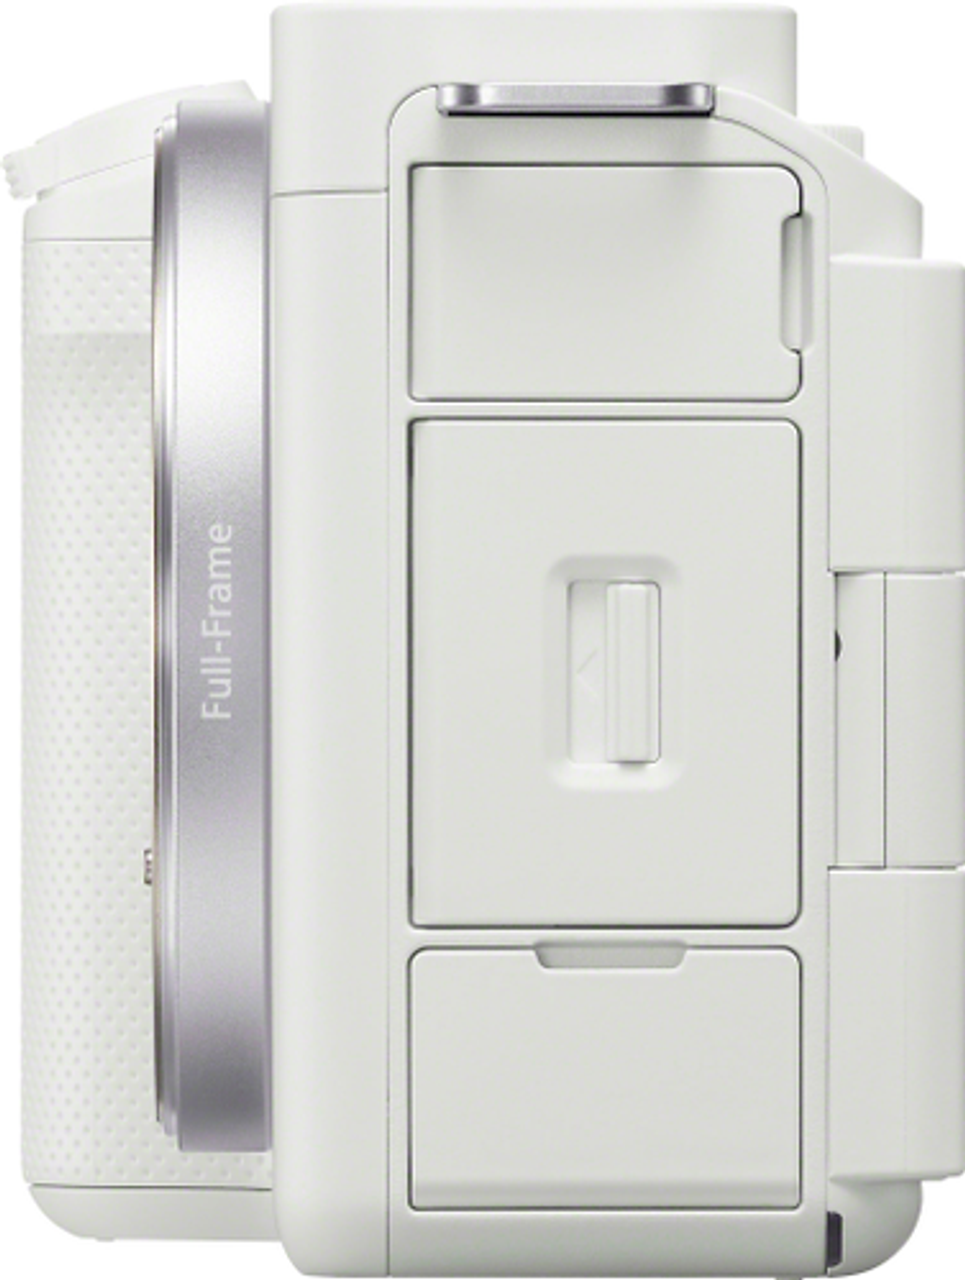 Sony - Alpha ZV-E1 12.1-Megapixel Full-frame Vlog Mirrorless Lens Camera (Body Only) - White